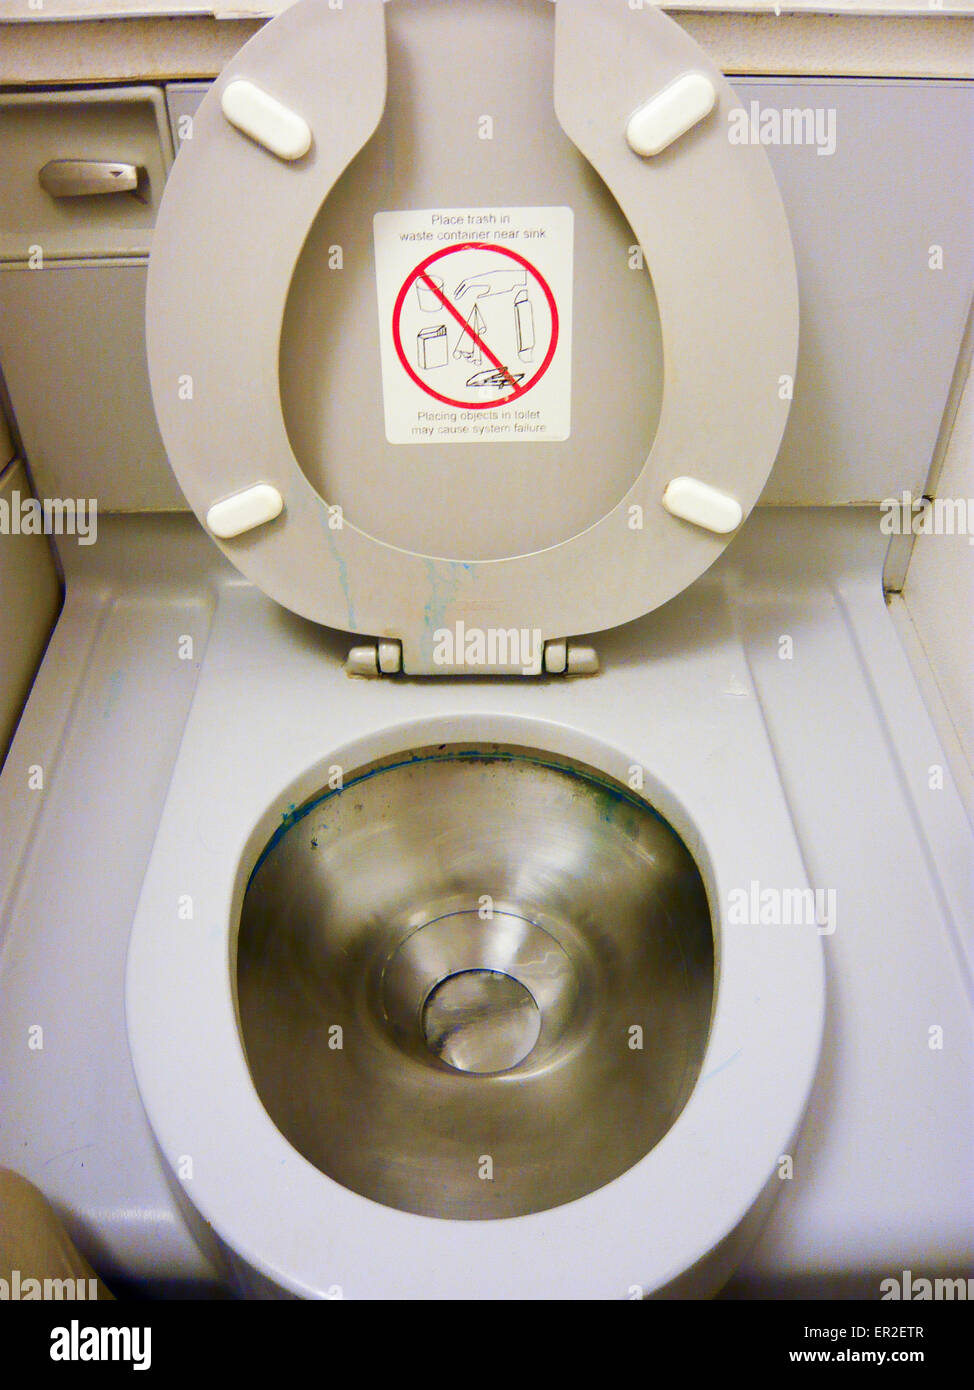 Toilette im Flugzeug Stockfotografie - Alamy